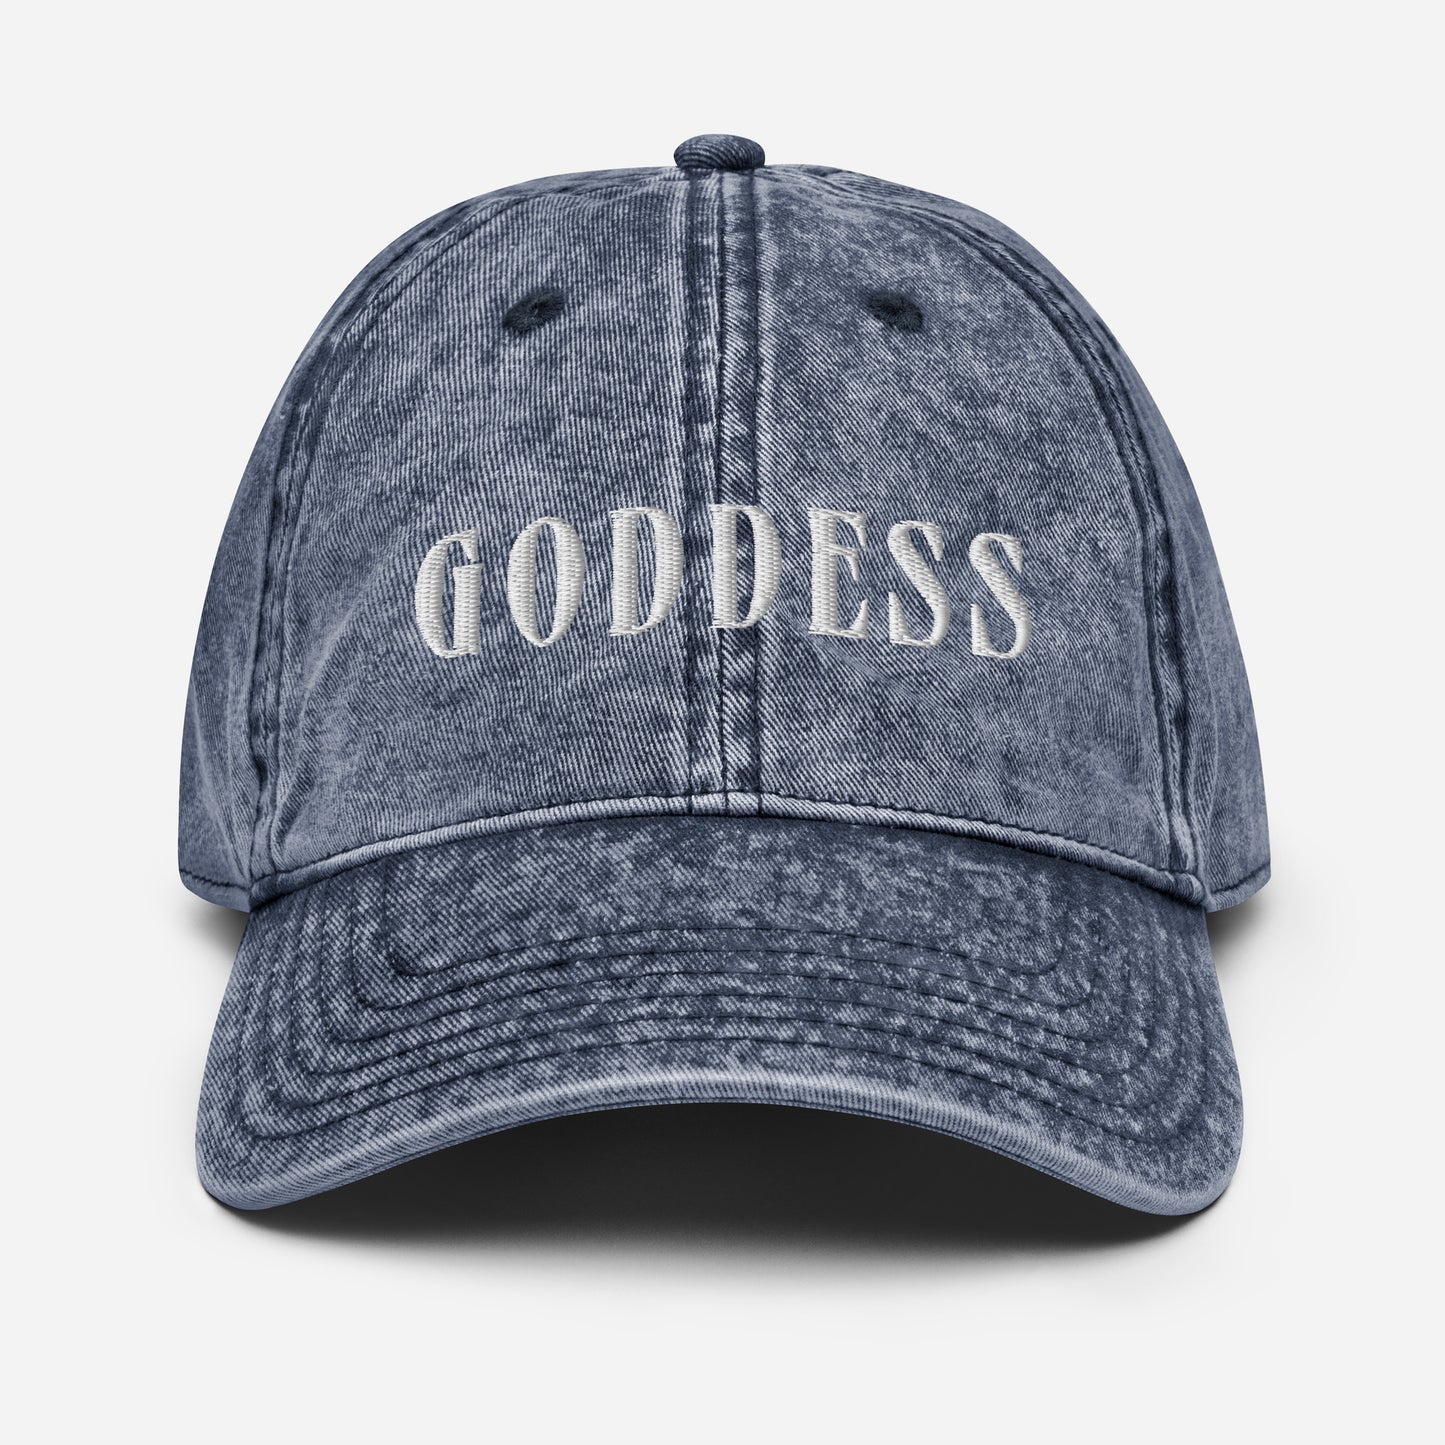 Goddess Vintage Hat